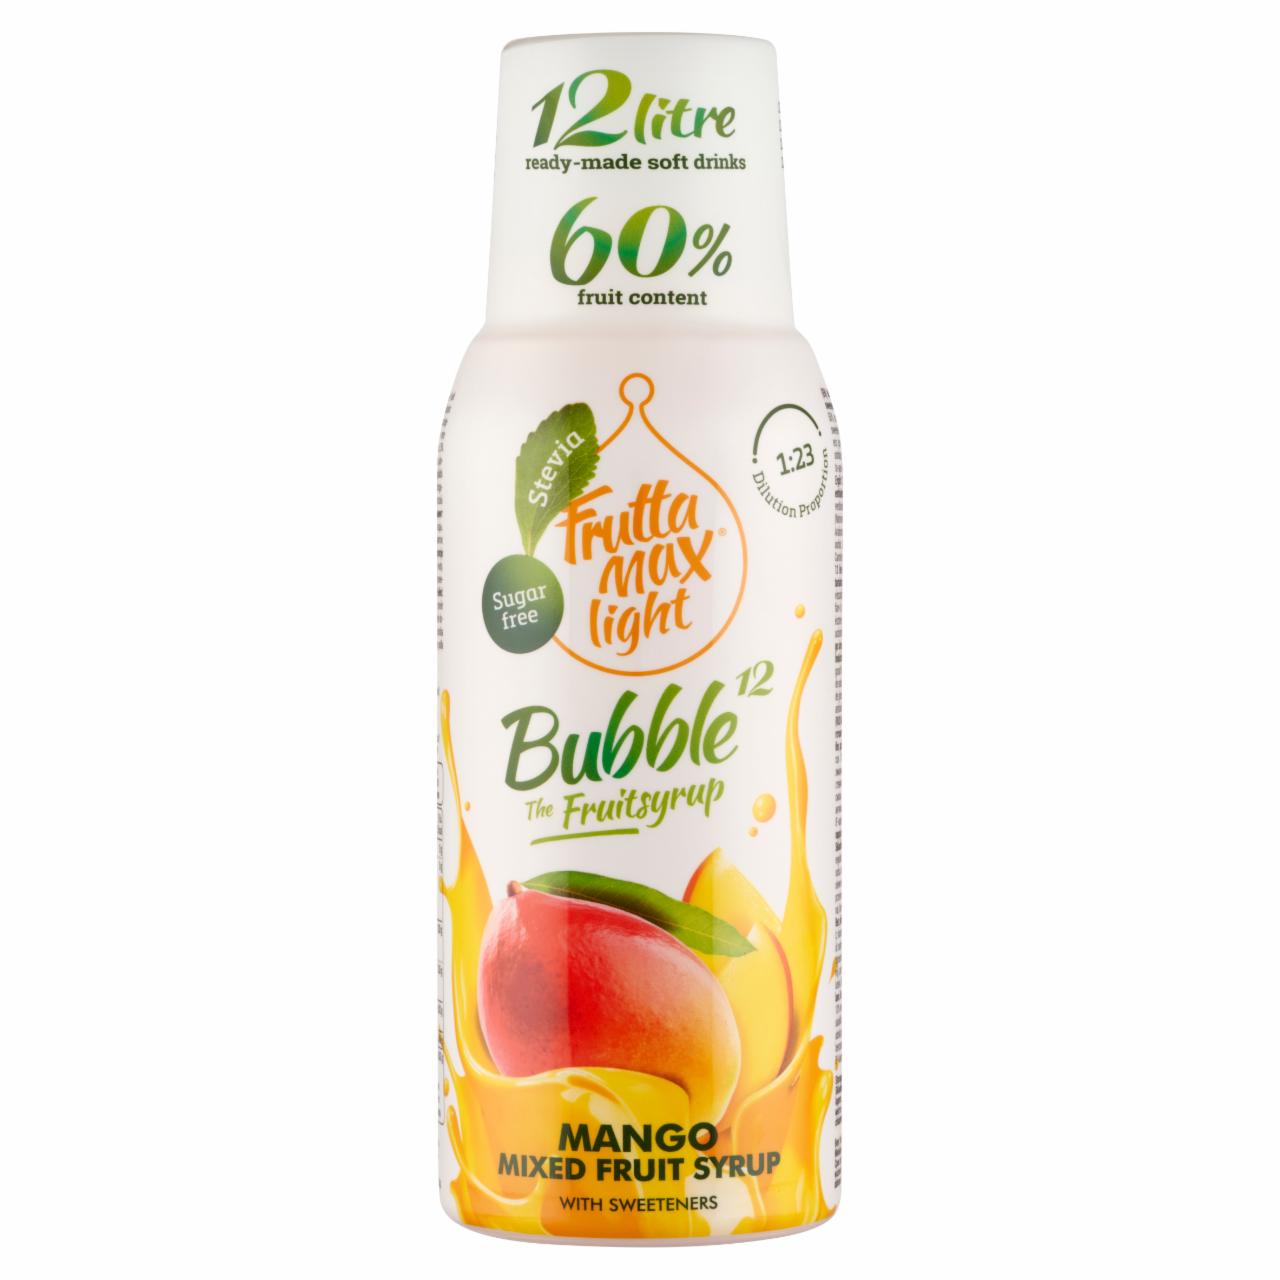 Képek - FruttaMax Bubble¹² Light mangó vegyes gyümölcsszörp édesítőszerekkel 500 ml